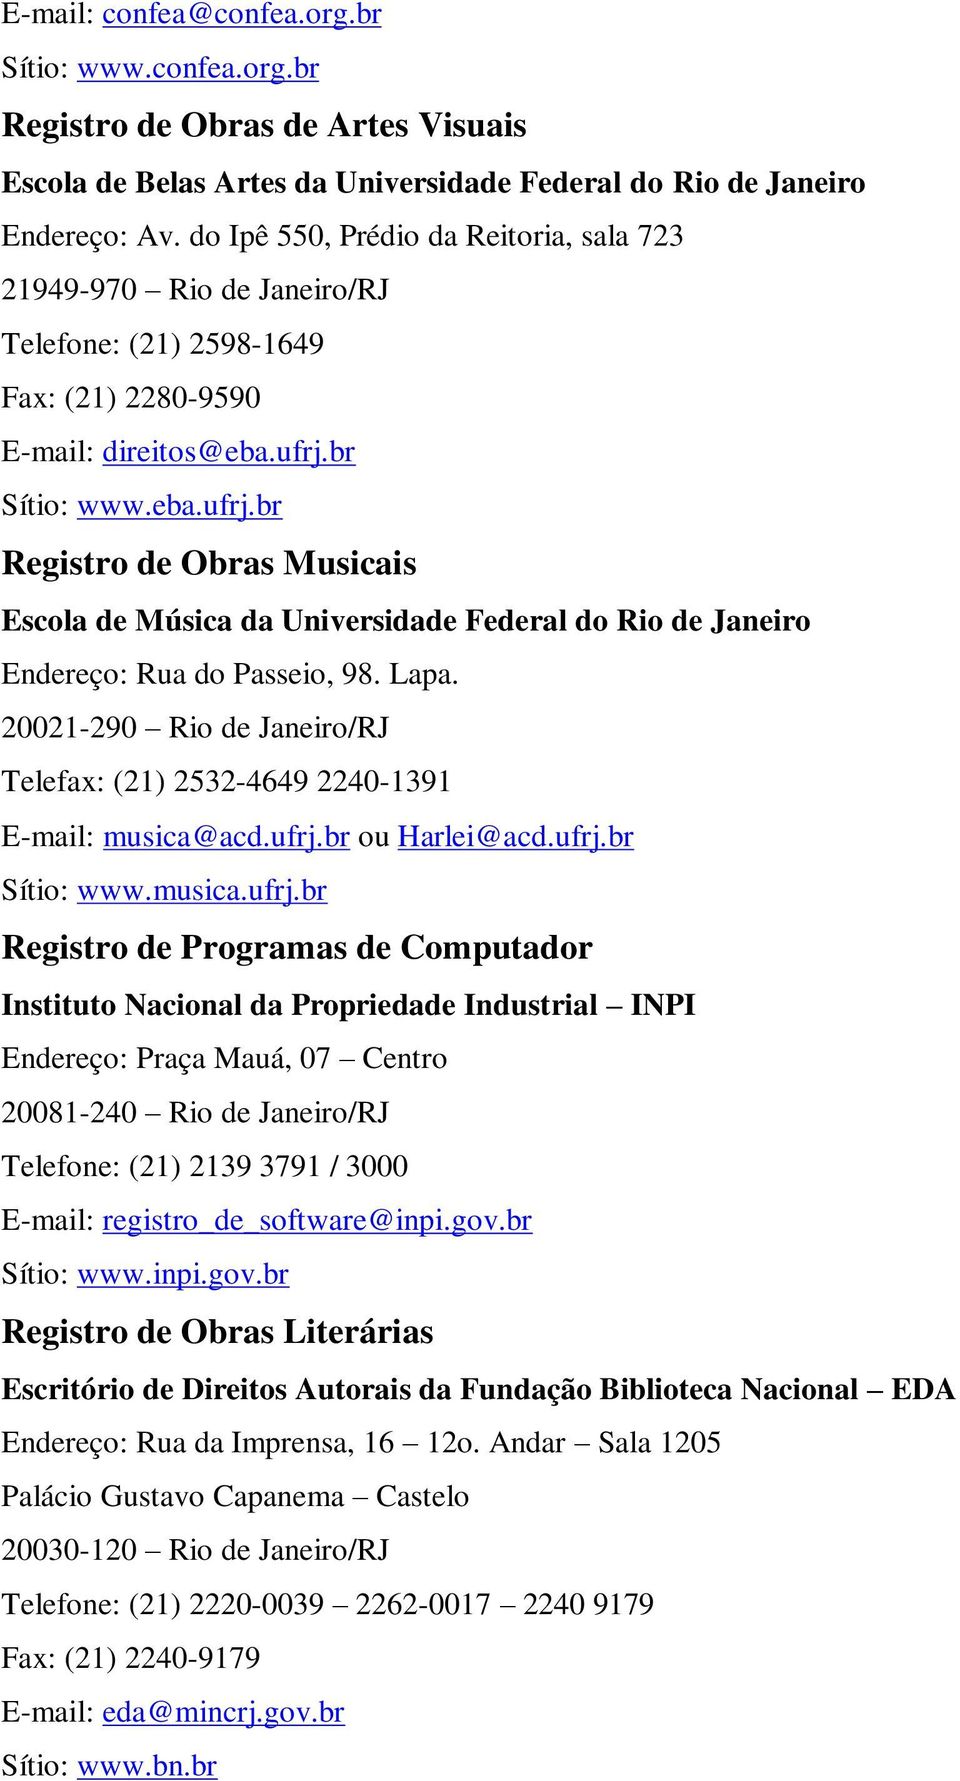 br Sítio: www.eba.ufrj.br Registro de Obras Musicais Escola de Música da Universidade Federal do Rio de Janeiro Endereço: Rua do Passeio, 98. Lapa.